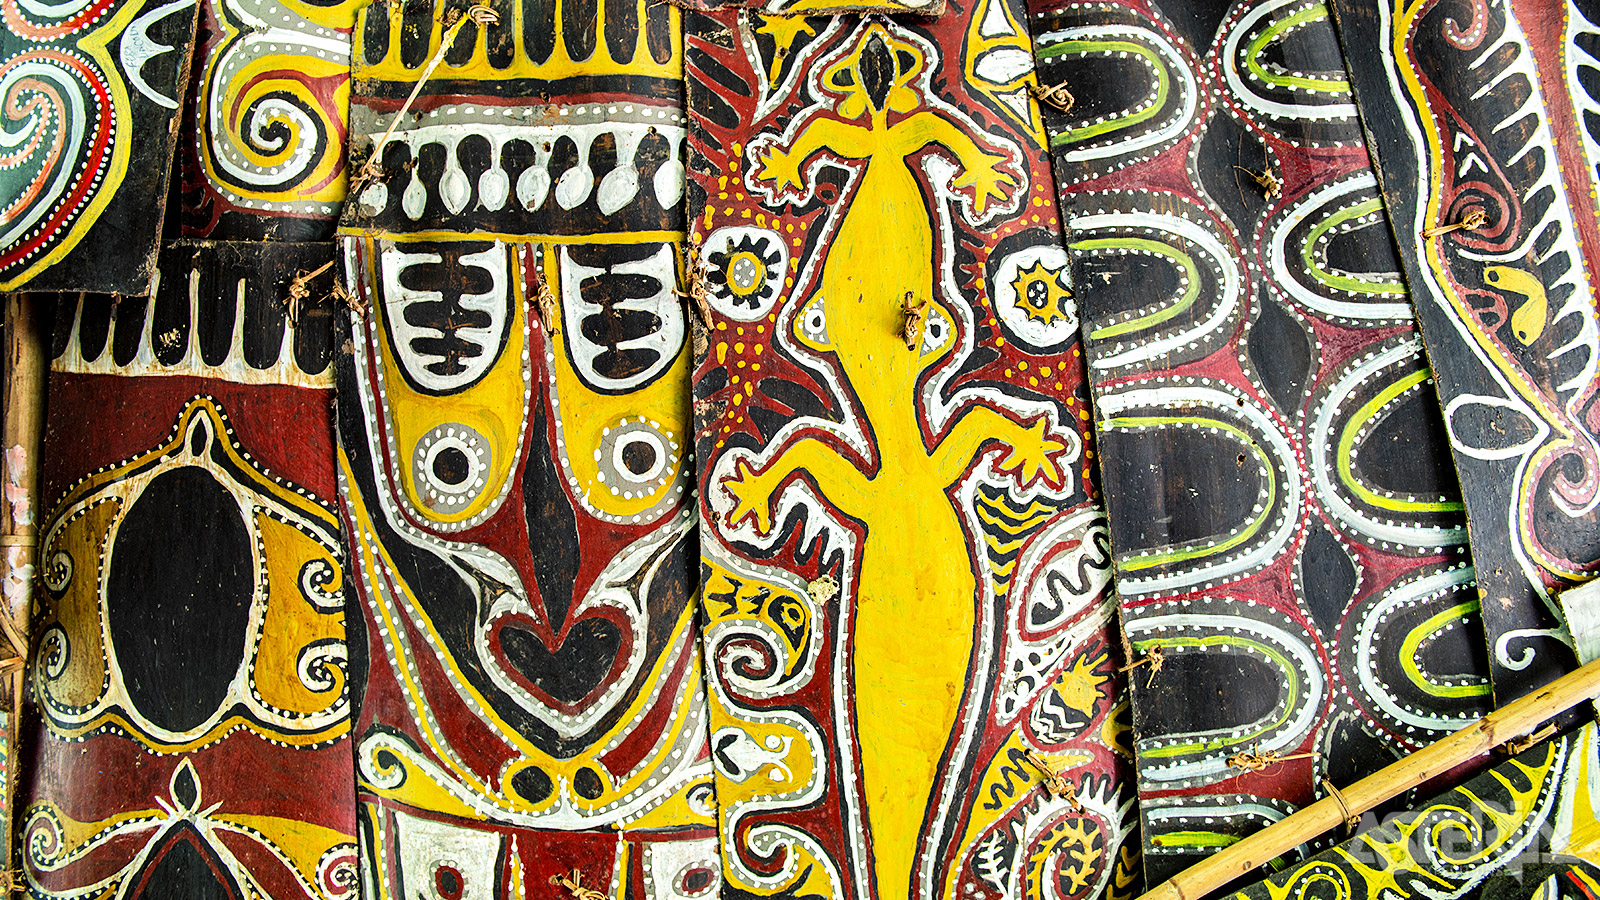 De provincie van de Sepik is de meest bekende regio voor de tribale kunst ter wereld